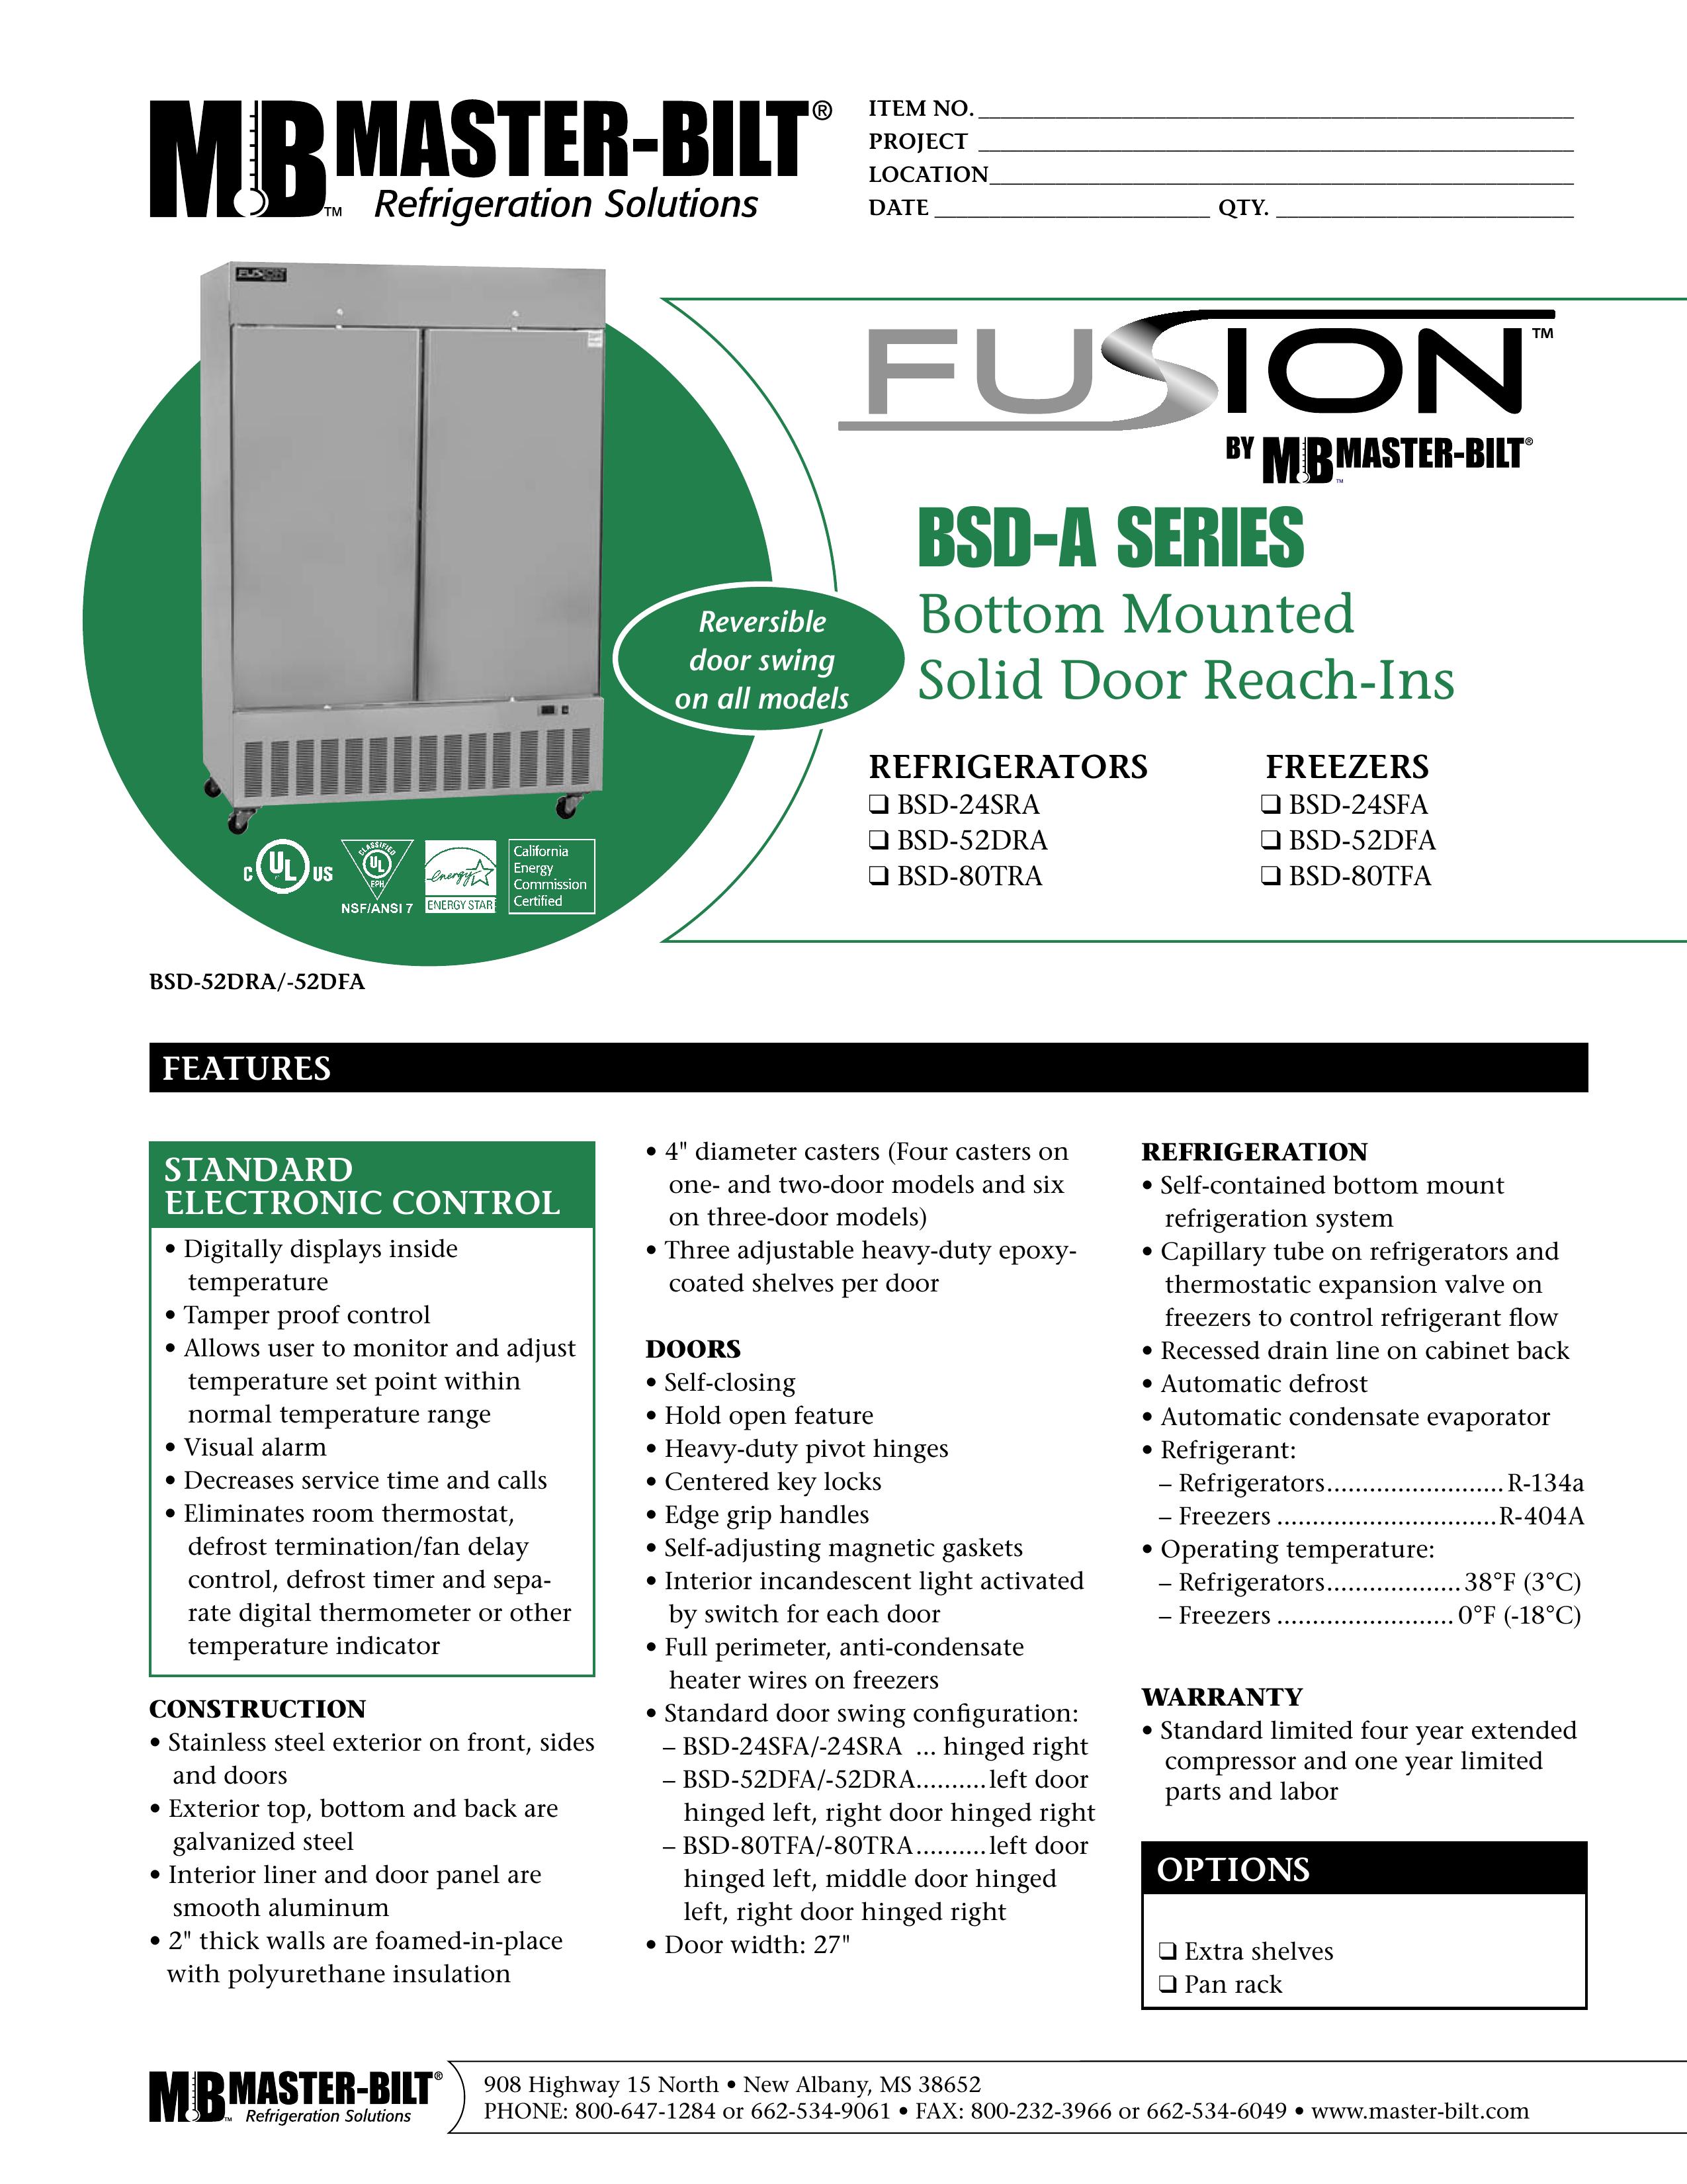 Master Bilt BSD-24SFA Refrigerator User Manual